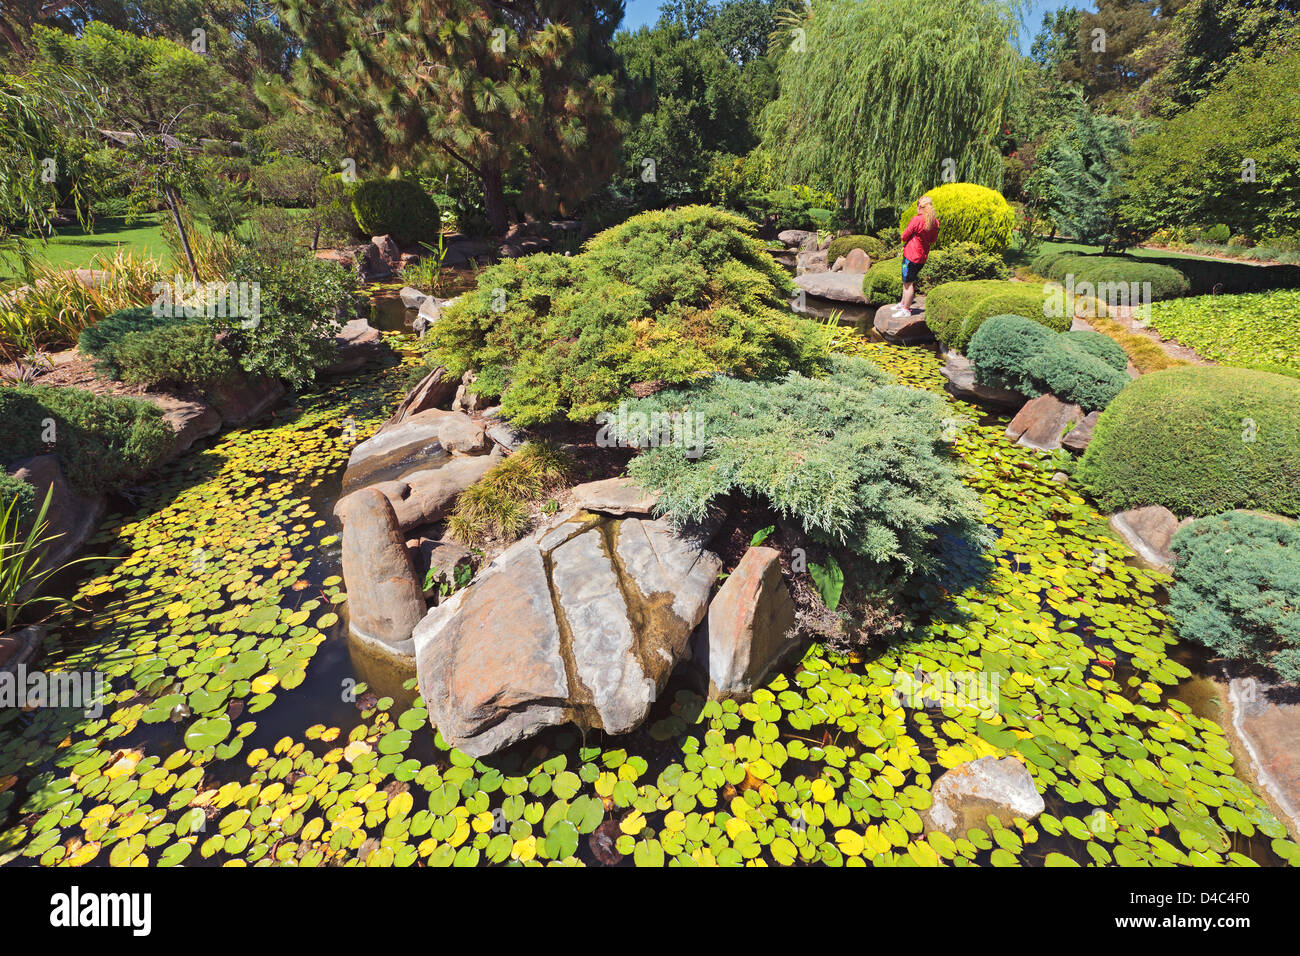 Arbre généalogique personne femme eau Roseaux Roseaux nénuphars nénuphar Jardin Japonais dans le sud du parc d'Adélaïde en Australie du Sud Banque D'Images